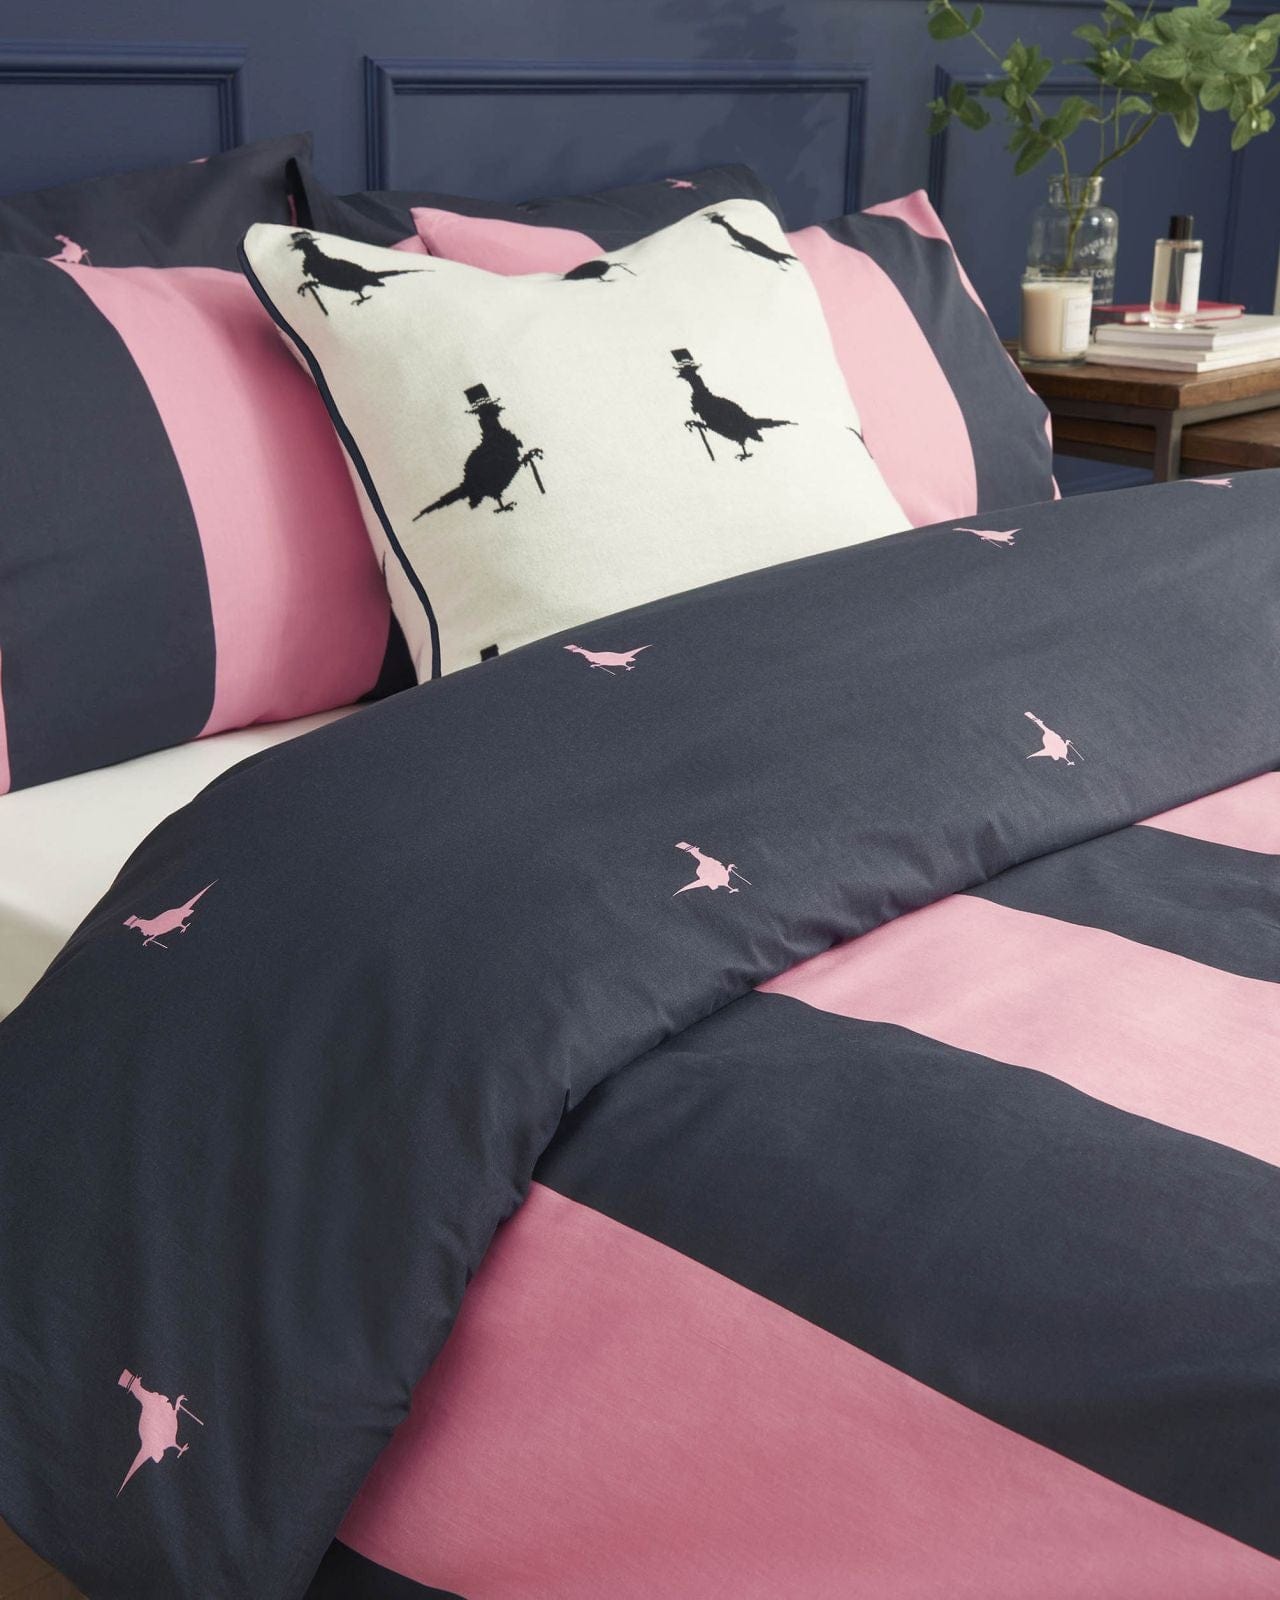 Ashley Wilde Interior Design Range Jack Wills Heritage Stripe Navy-Pink Bedding